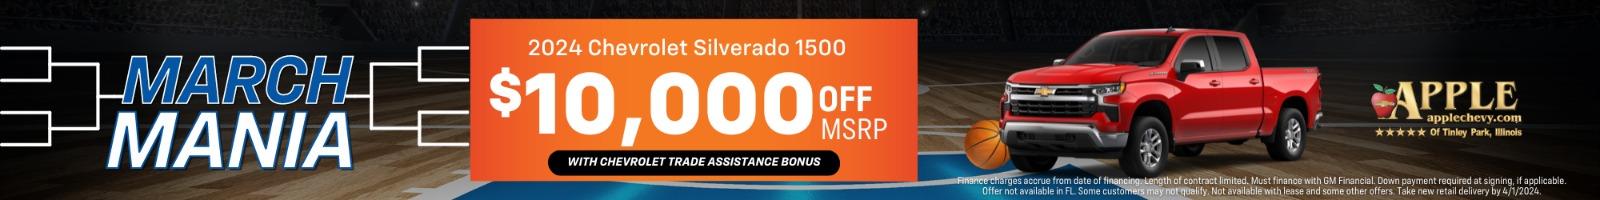 2024 Chevy Silverado 1500 $10,000 OFF MSRP